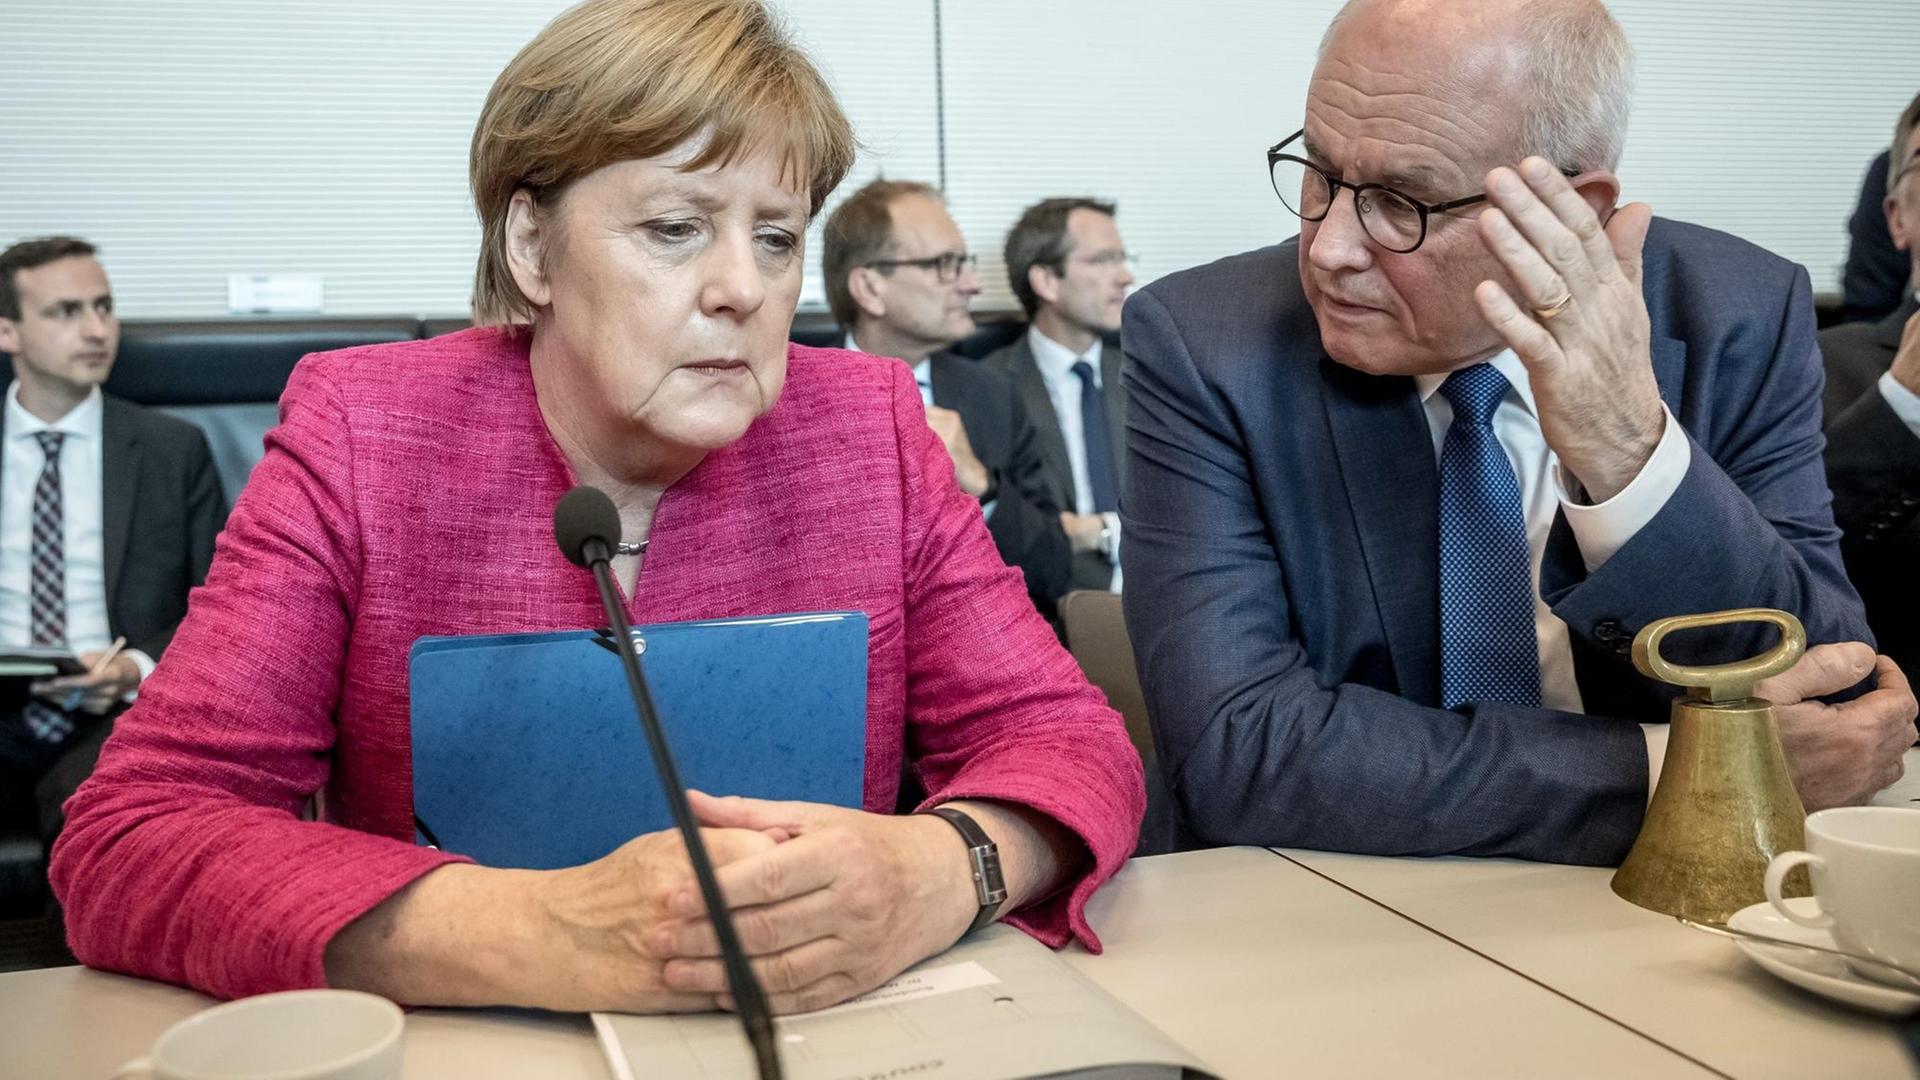 Bundeskanzlerin Angela Merkel (CDU) spricht mit Volker Kauder, Fraktionsvorsitzender der CDU/CSU-Fraktion